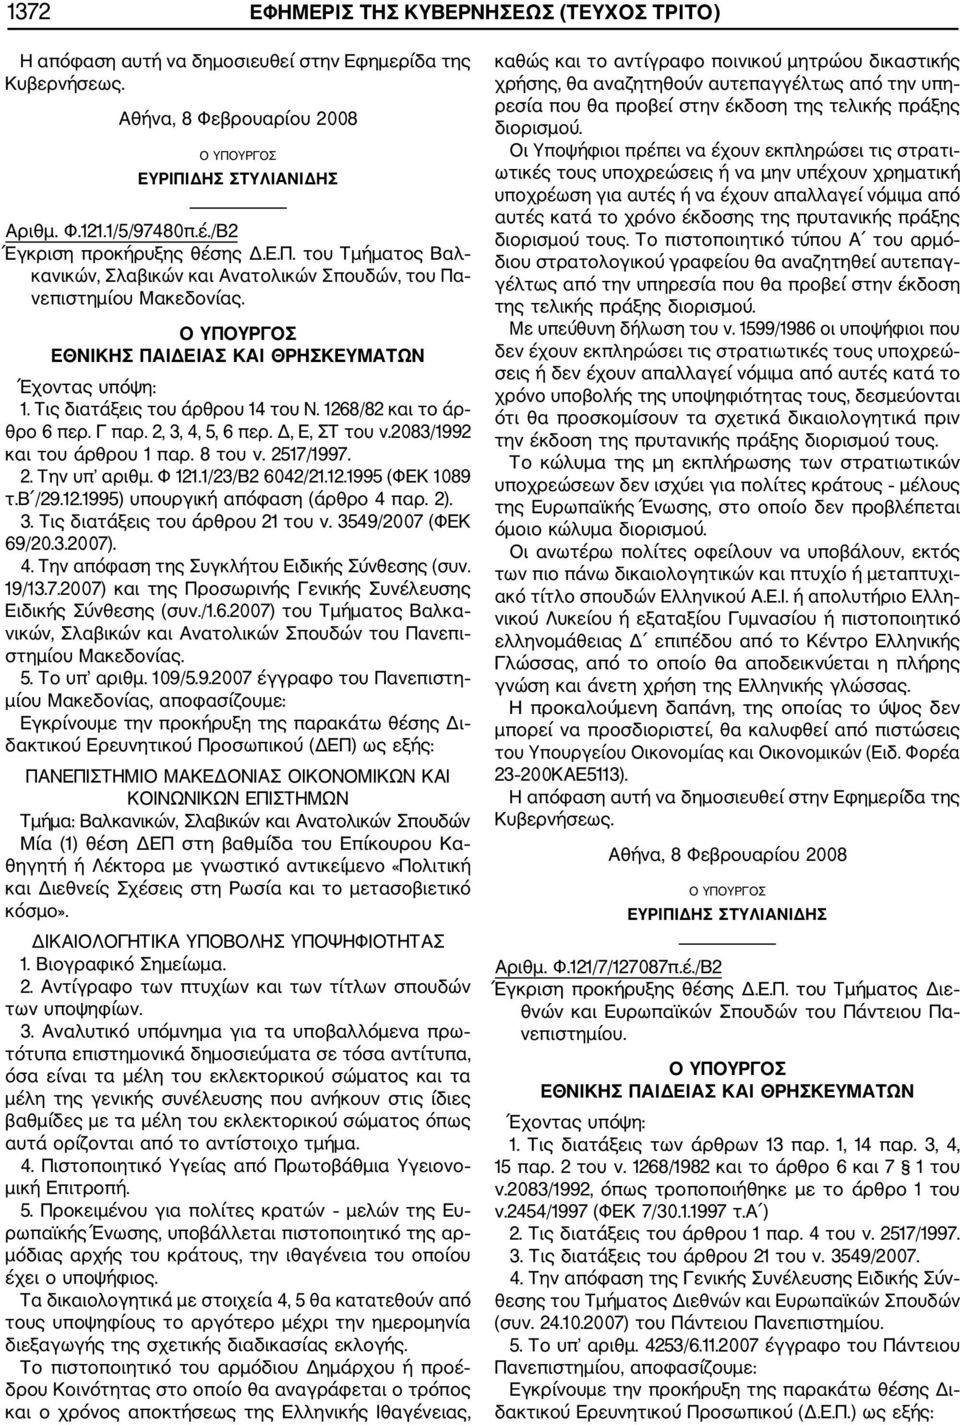 2007) του Τμήματος Βαλκα νικών, Σλαβικών και Ανατολικών Σπουδών του Πανεπι στημίου Μακεδονίας. 5. Το υπ αριθμ. 109/